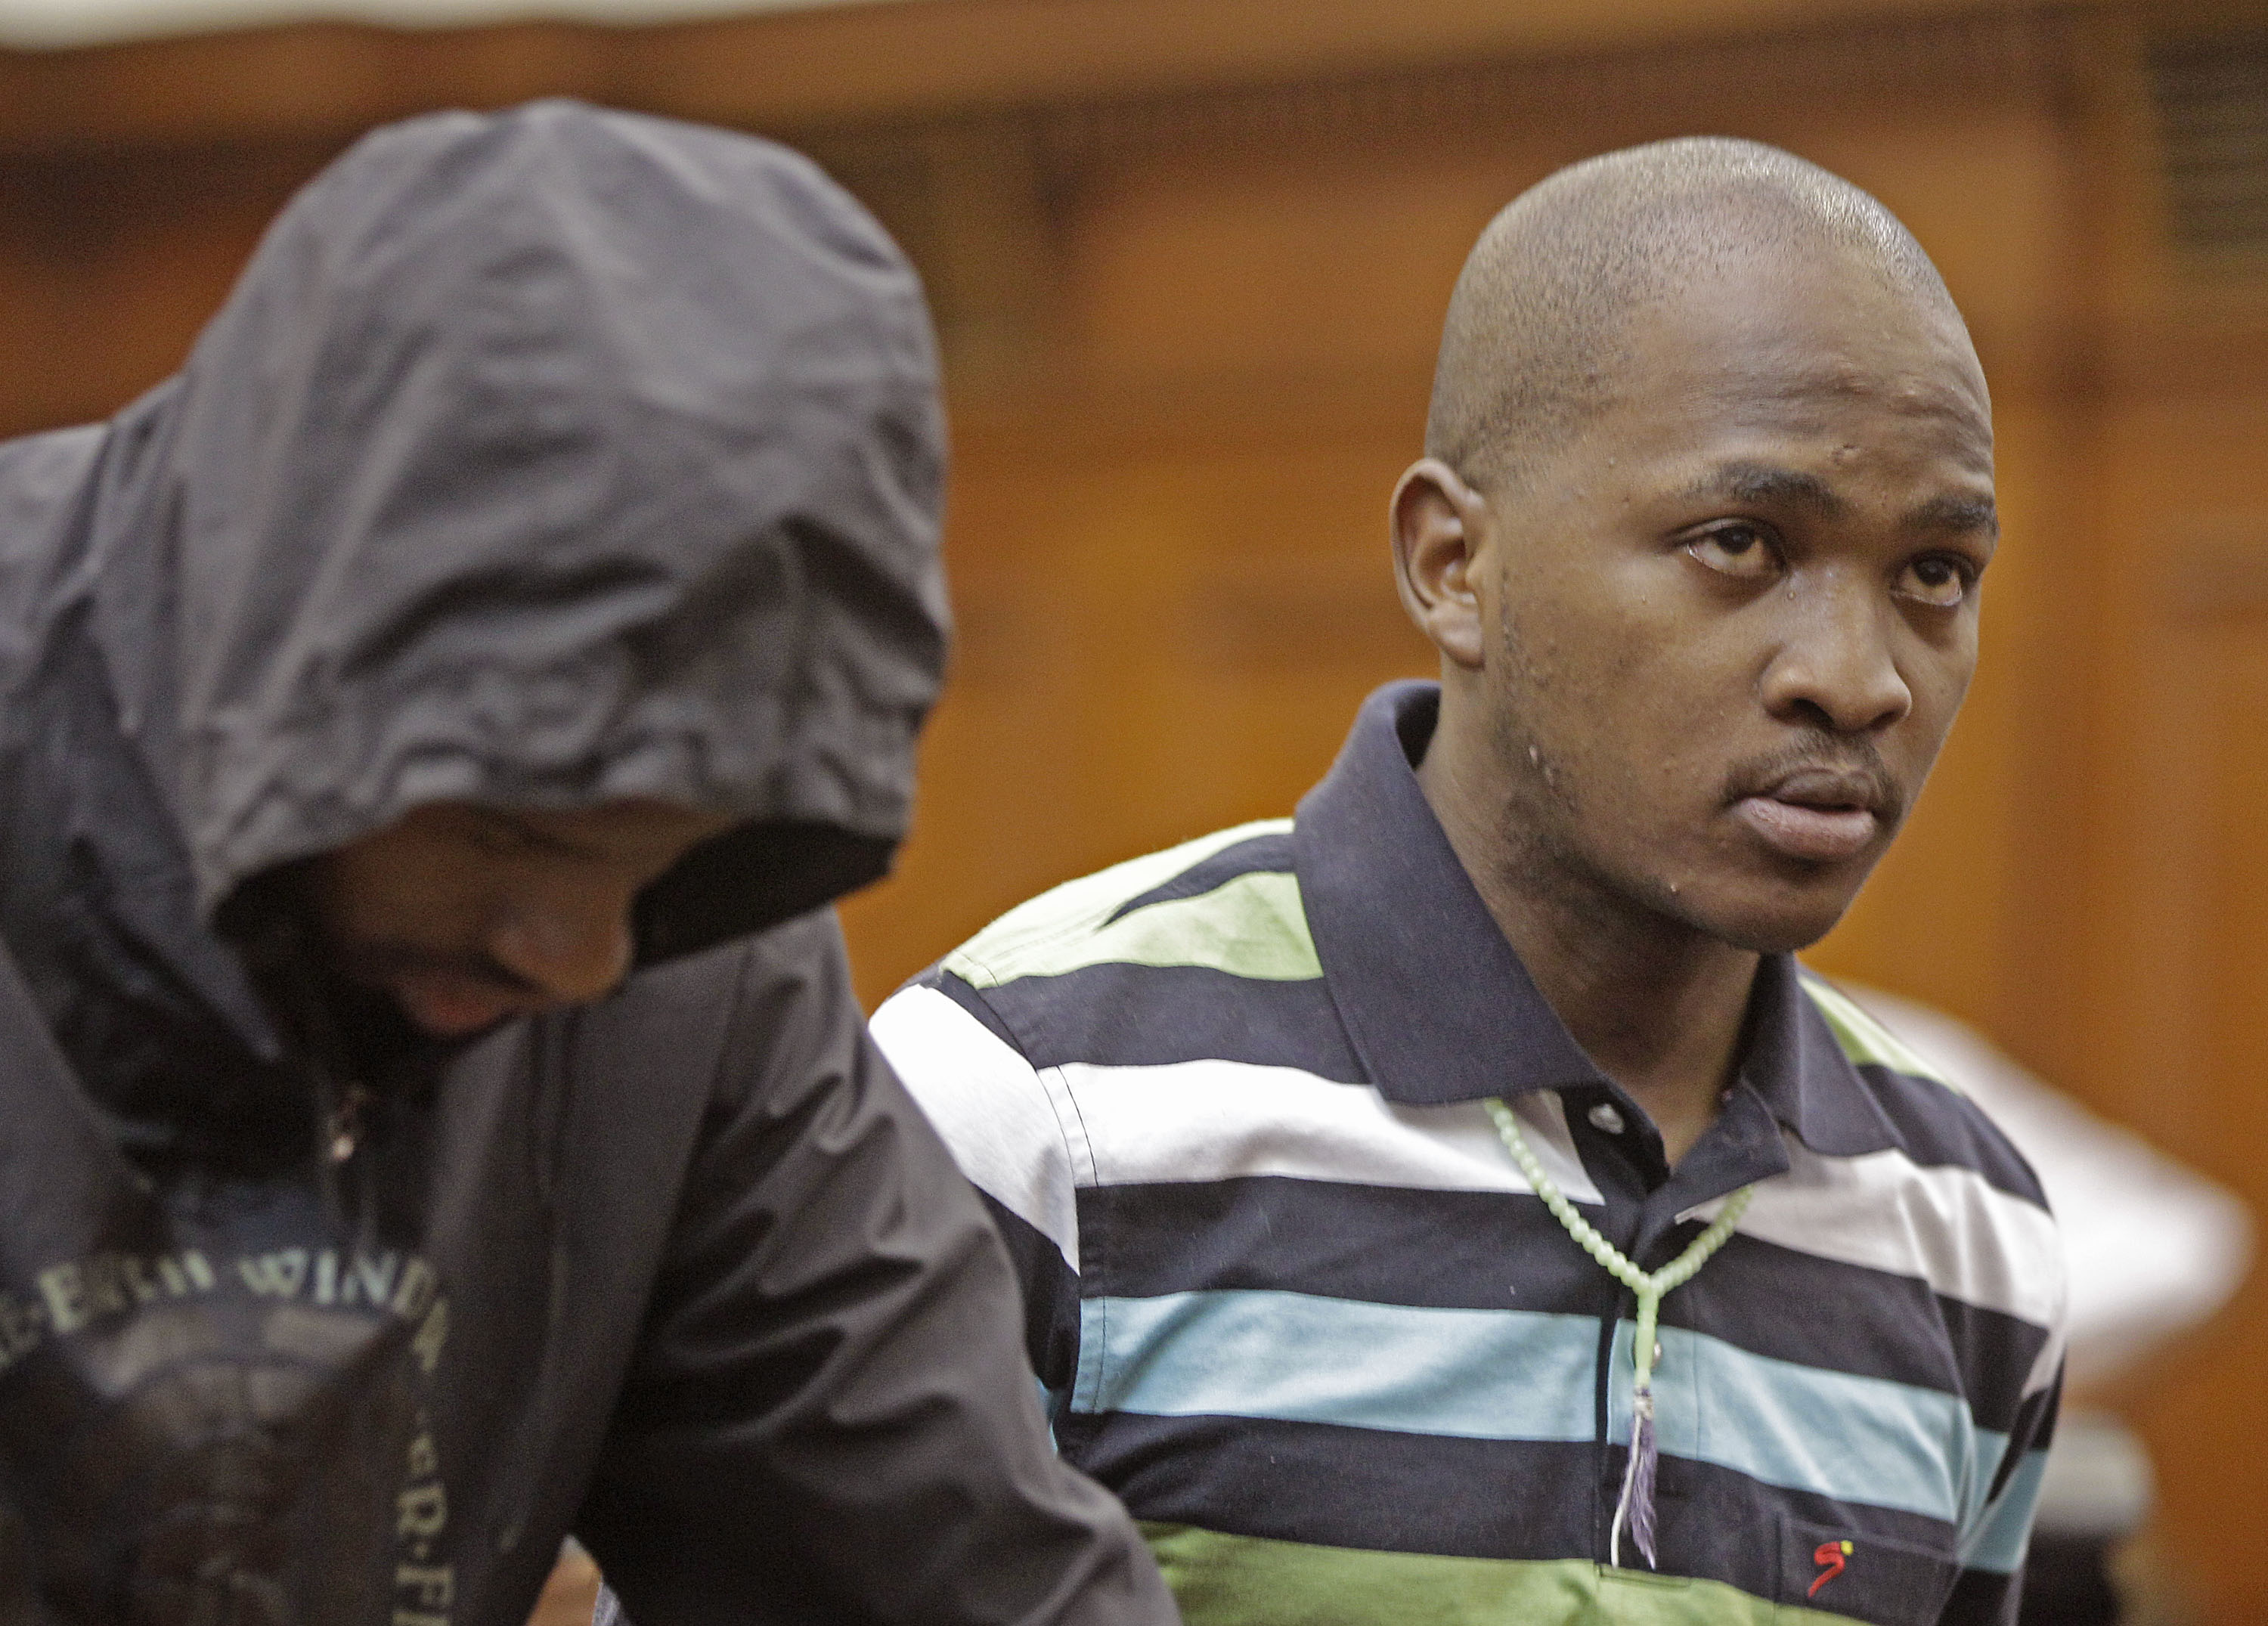 Xolile Mngeni och Mziwamadoda Qwabe ställs inför rätta för avrättningen. Rättegången inleds den 30 juli.